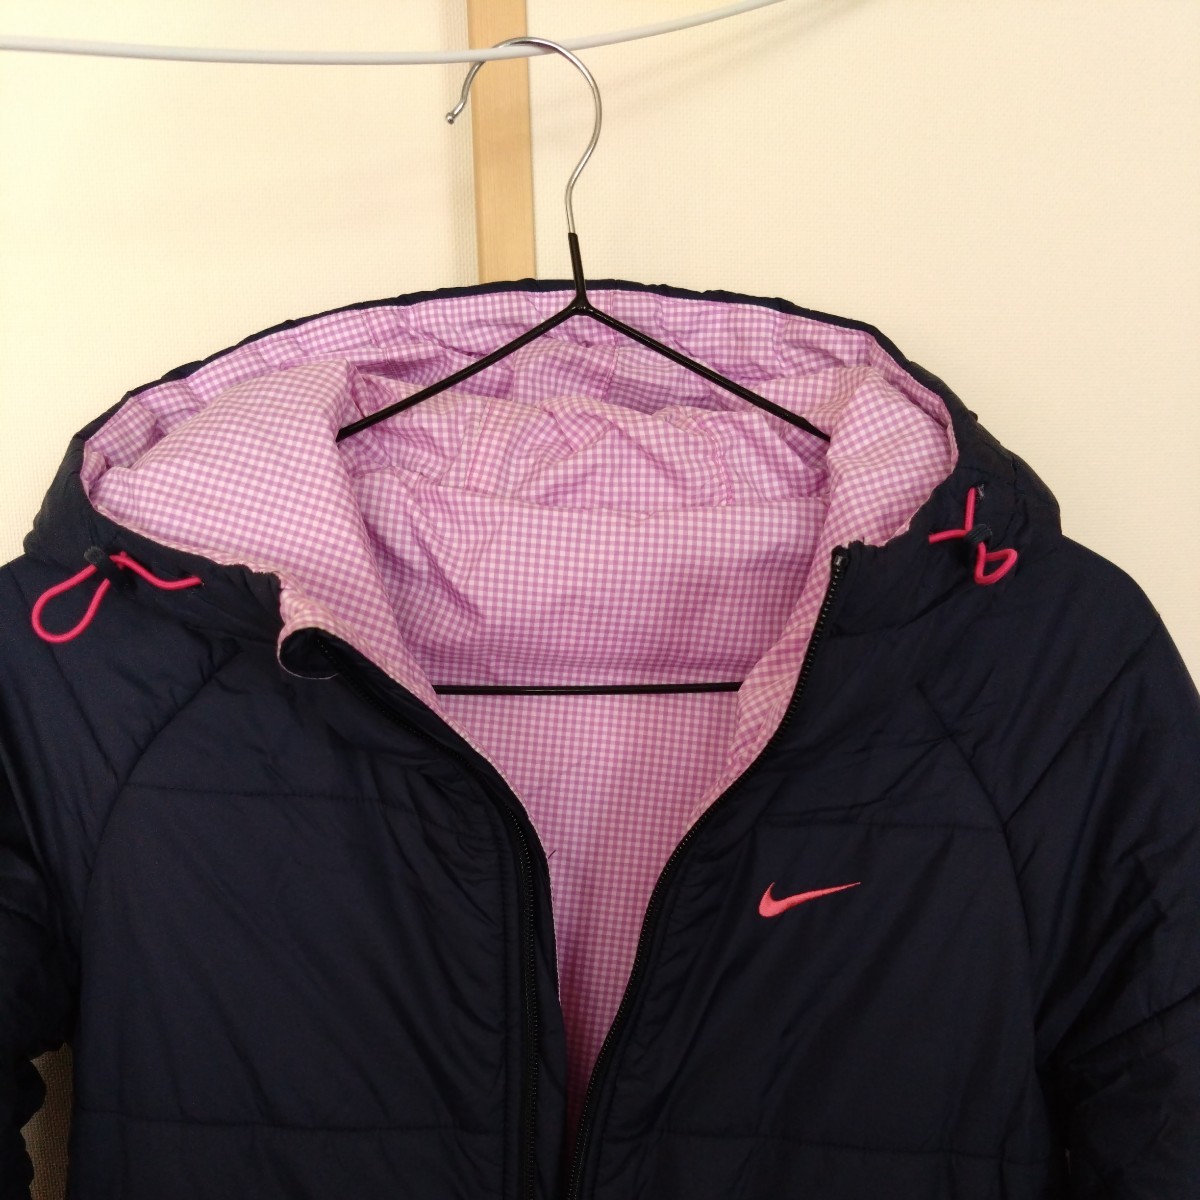  прекрасный товар Nike двусторонний bench пальто размер S 150~160 джемпер жакет спорт верхняя одежда женский Junior 